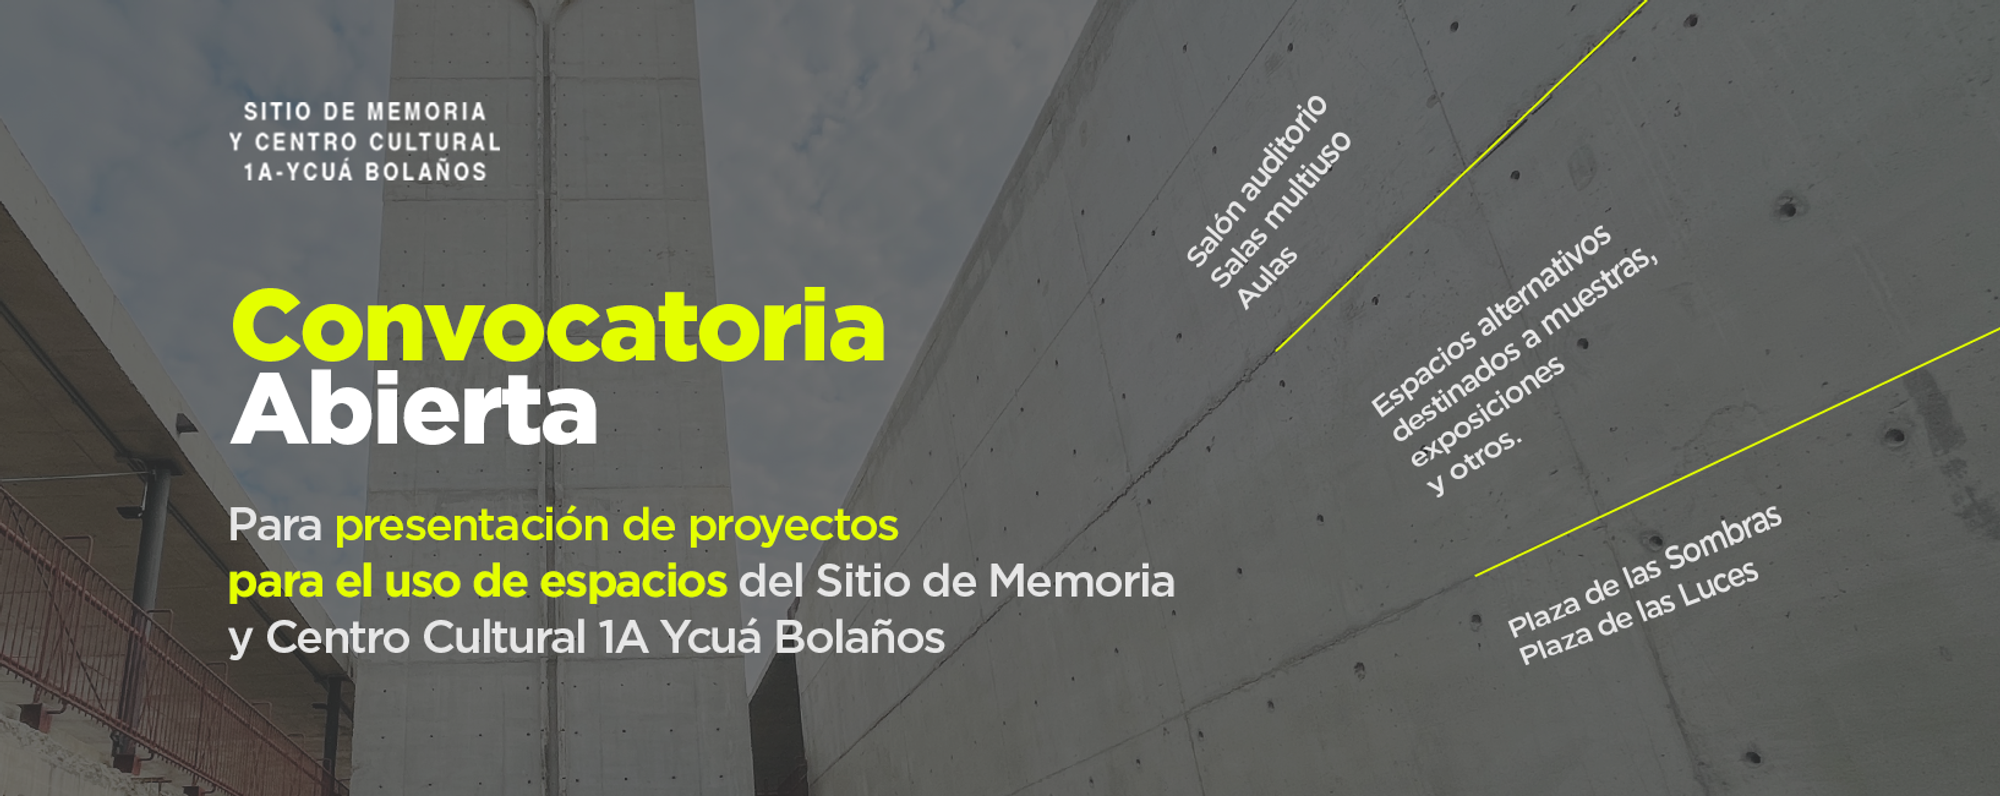 Convocatoria a proyectos para el uso de espacios en el Sitio de Memoria y Centro Cultural 1A – Ycuá Bolaños imagen